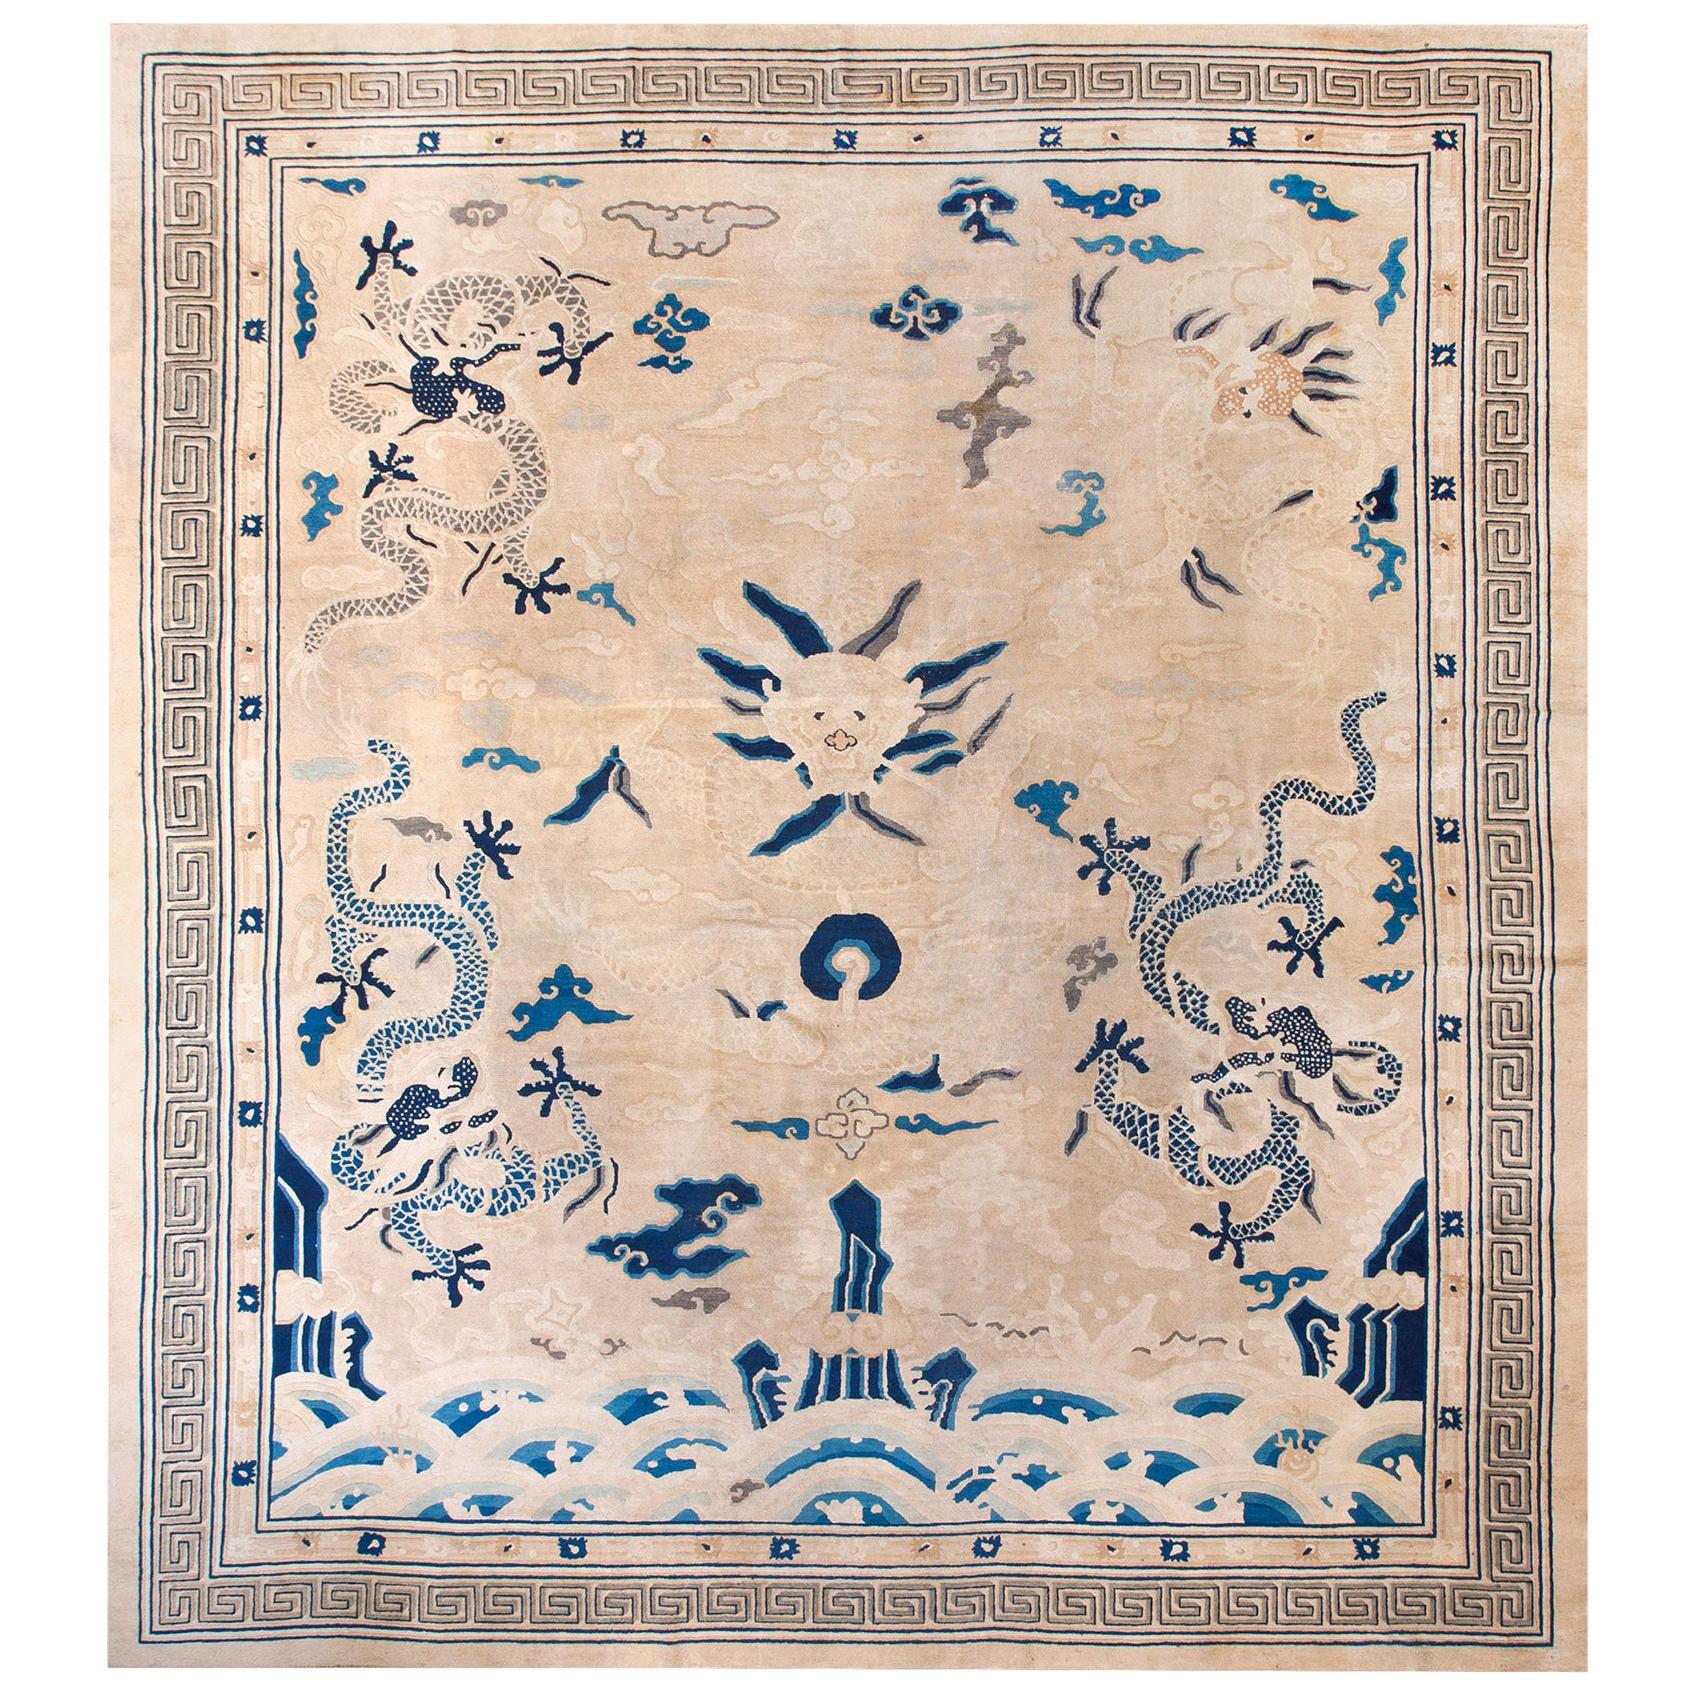 Chinesischer Pekinger Drachenteppich des 19. Jahrhunderts ( 11'10" x 12'6" - 360 x 380)